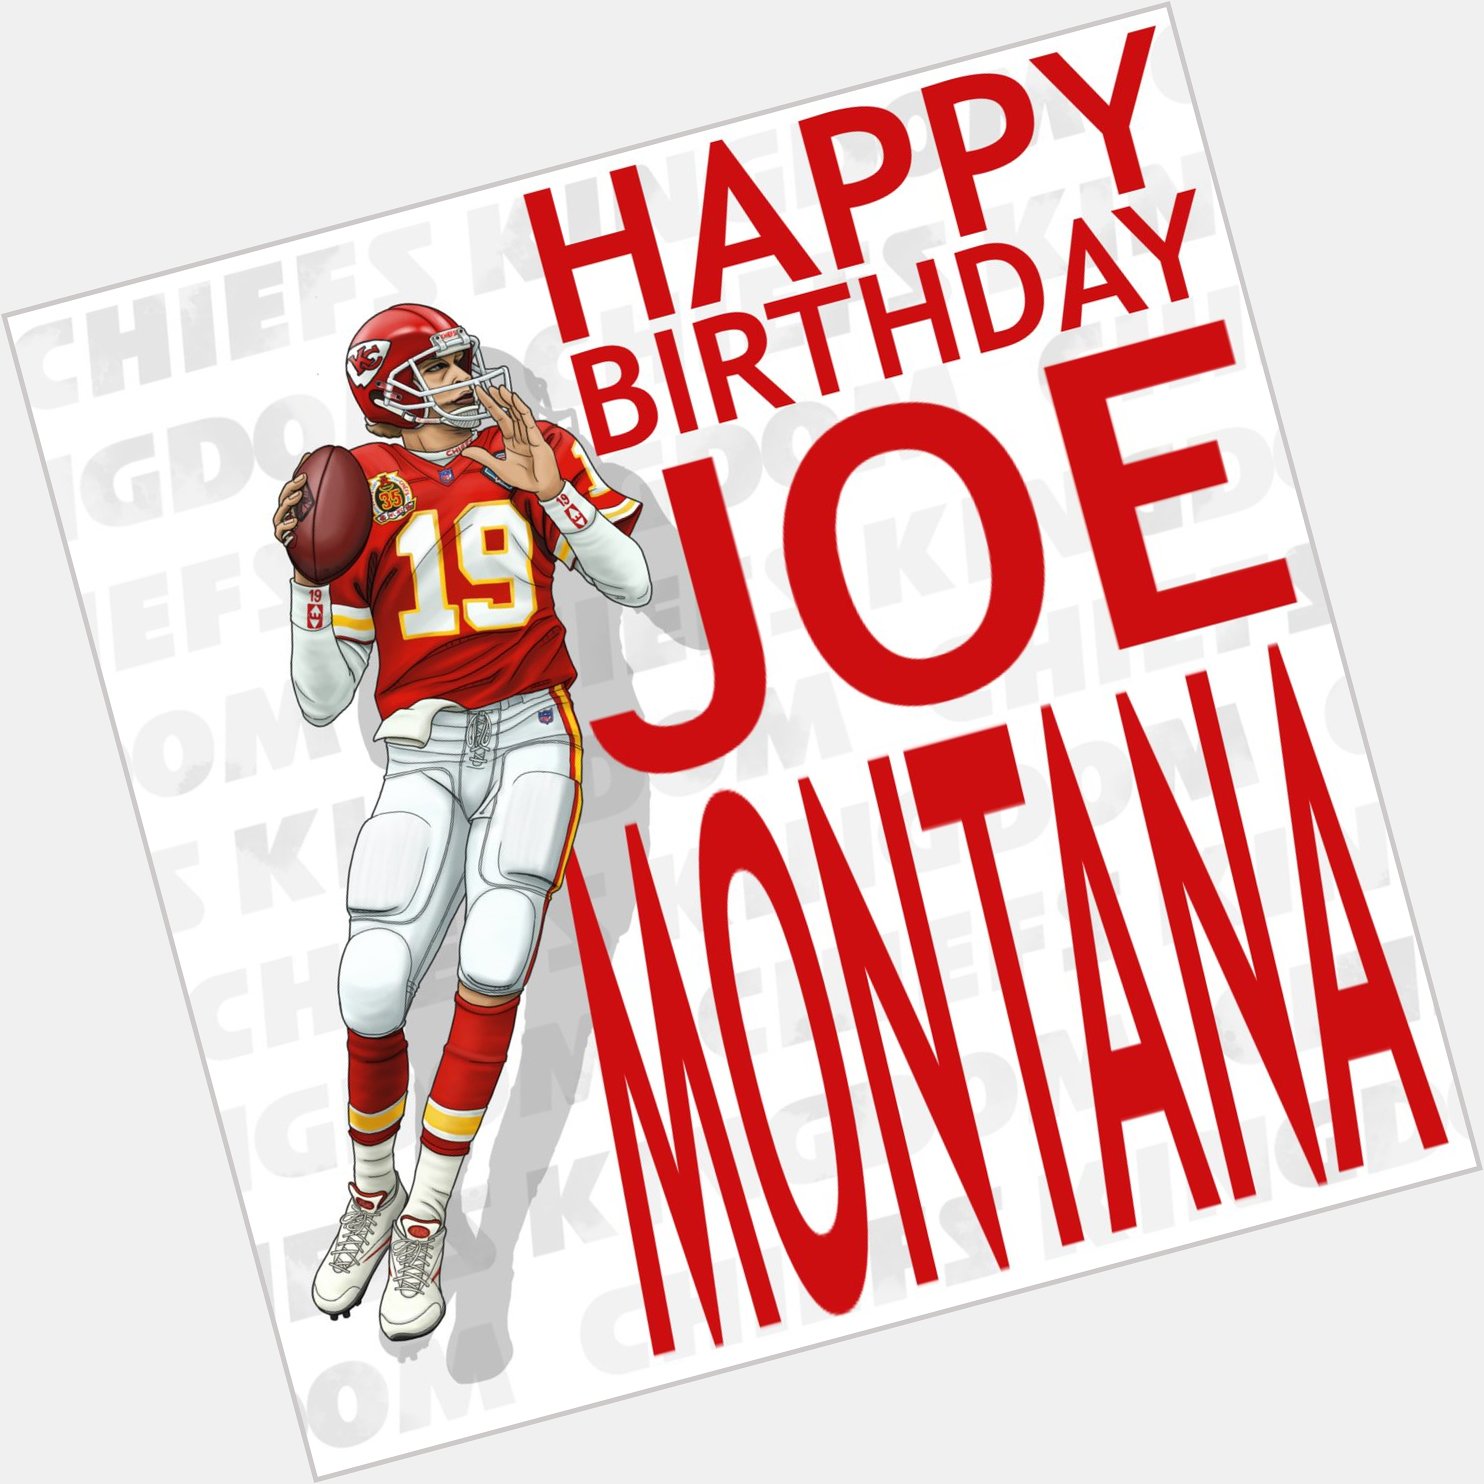 Happy Birthday JOE MONTANA  